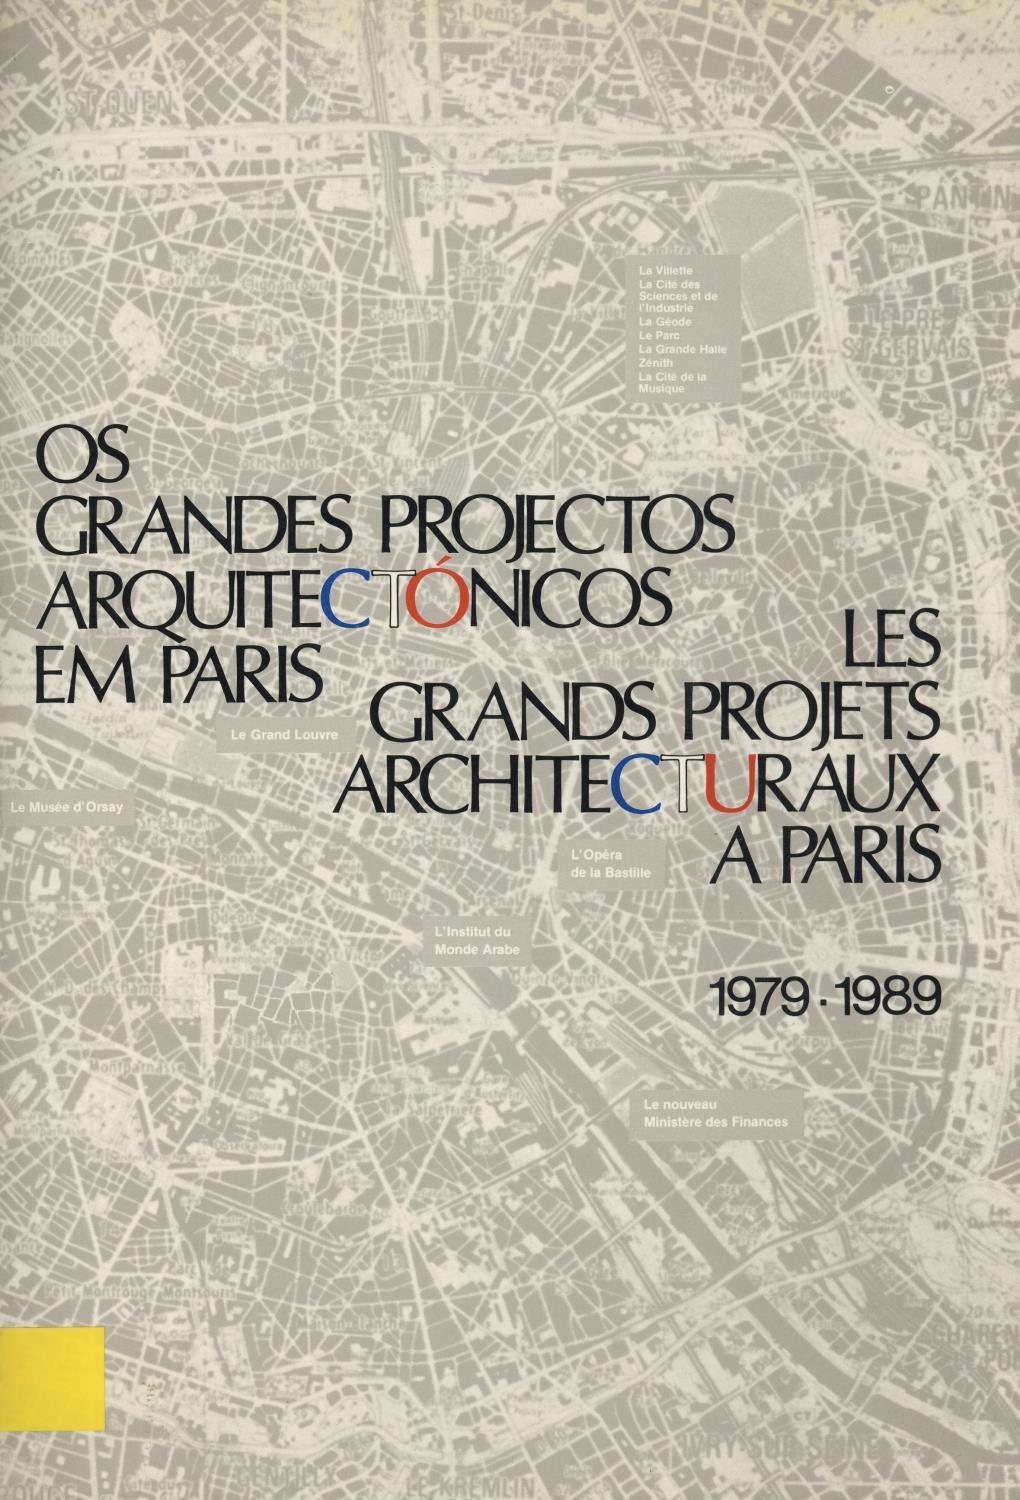 Os Grandes Projectos Arquitectónicos em Paris, 1979 – 1989/ Les Grands Projets Architecturaux à Paris 1979 – 1989